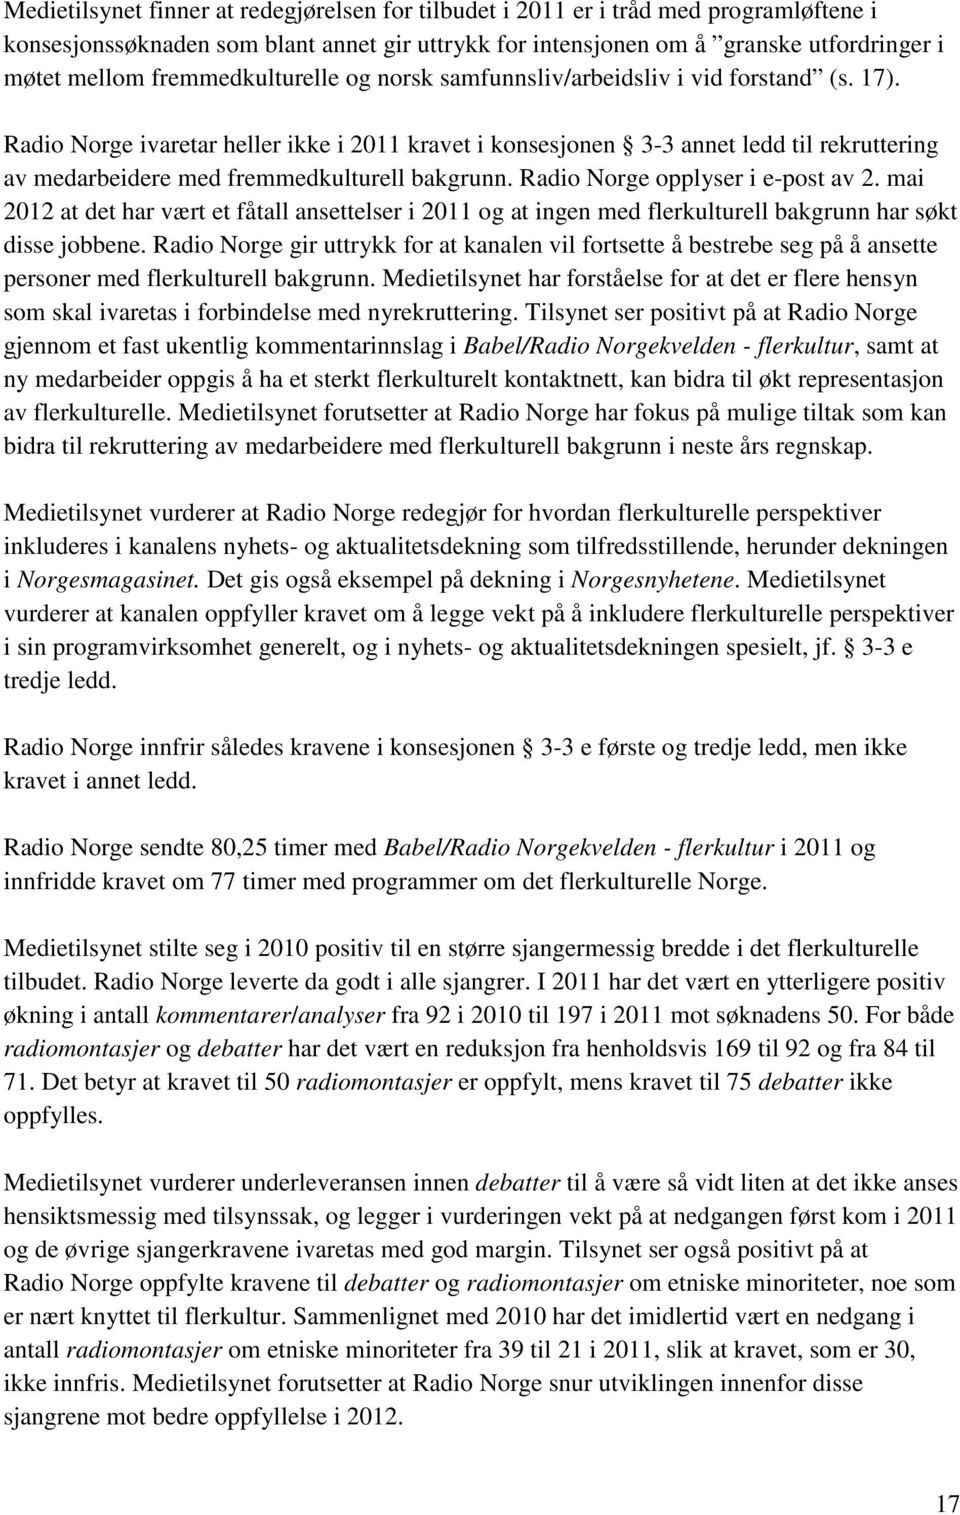 Radio Norge ivaretar heller ikke i 2011 kravet i konsesjonen 3-3 annet ledd til rekruttering av medarbeidere med fremmedkulturell bakgrunn. Radio Norge opplyser i e-post av 2.